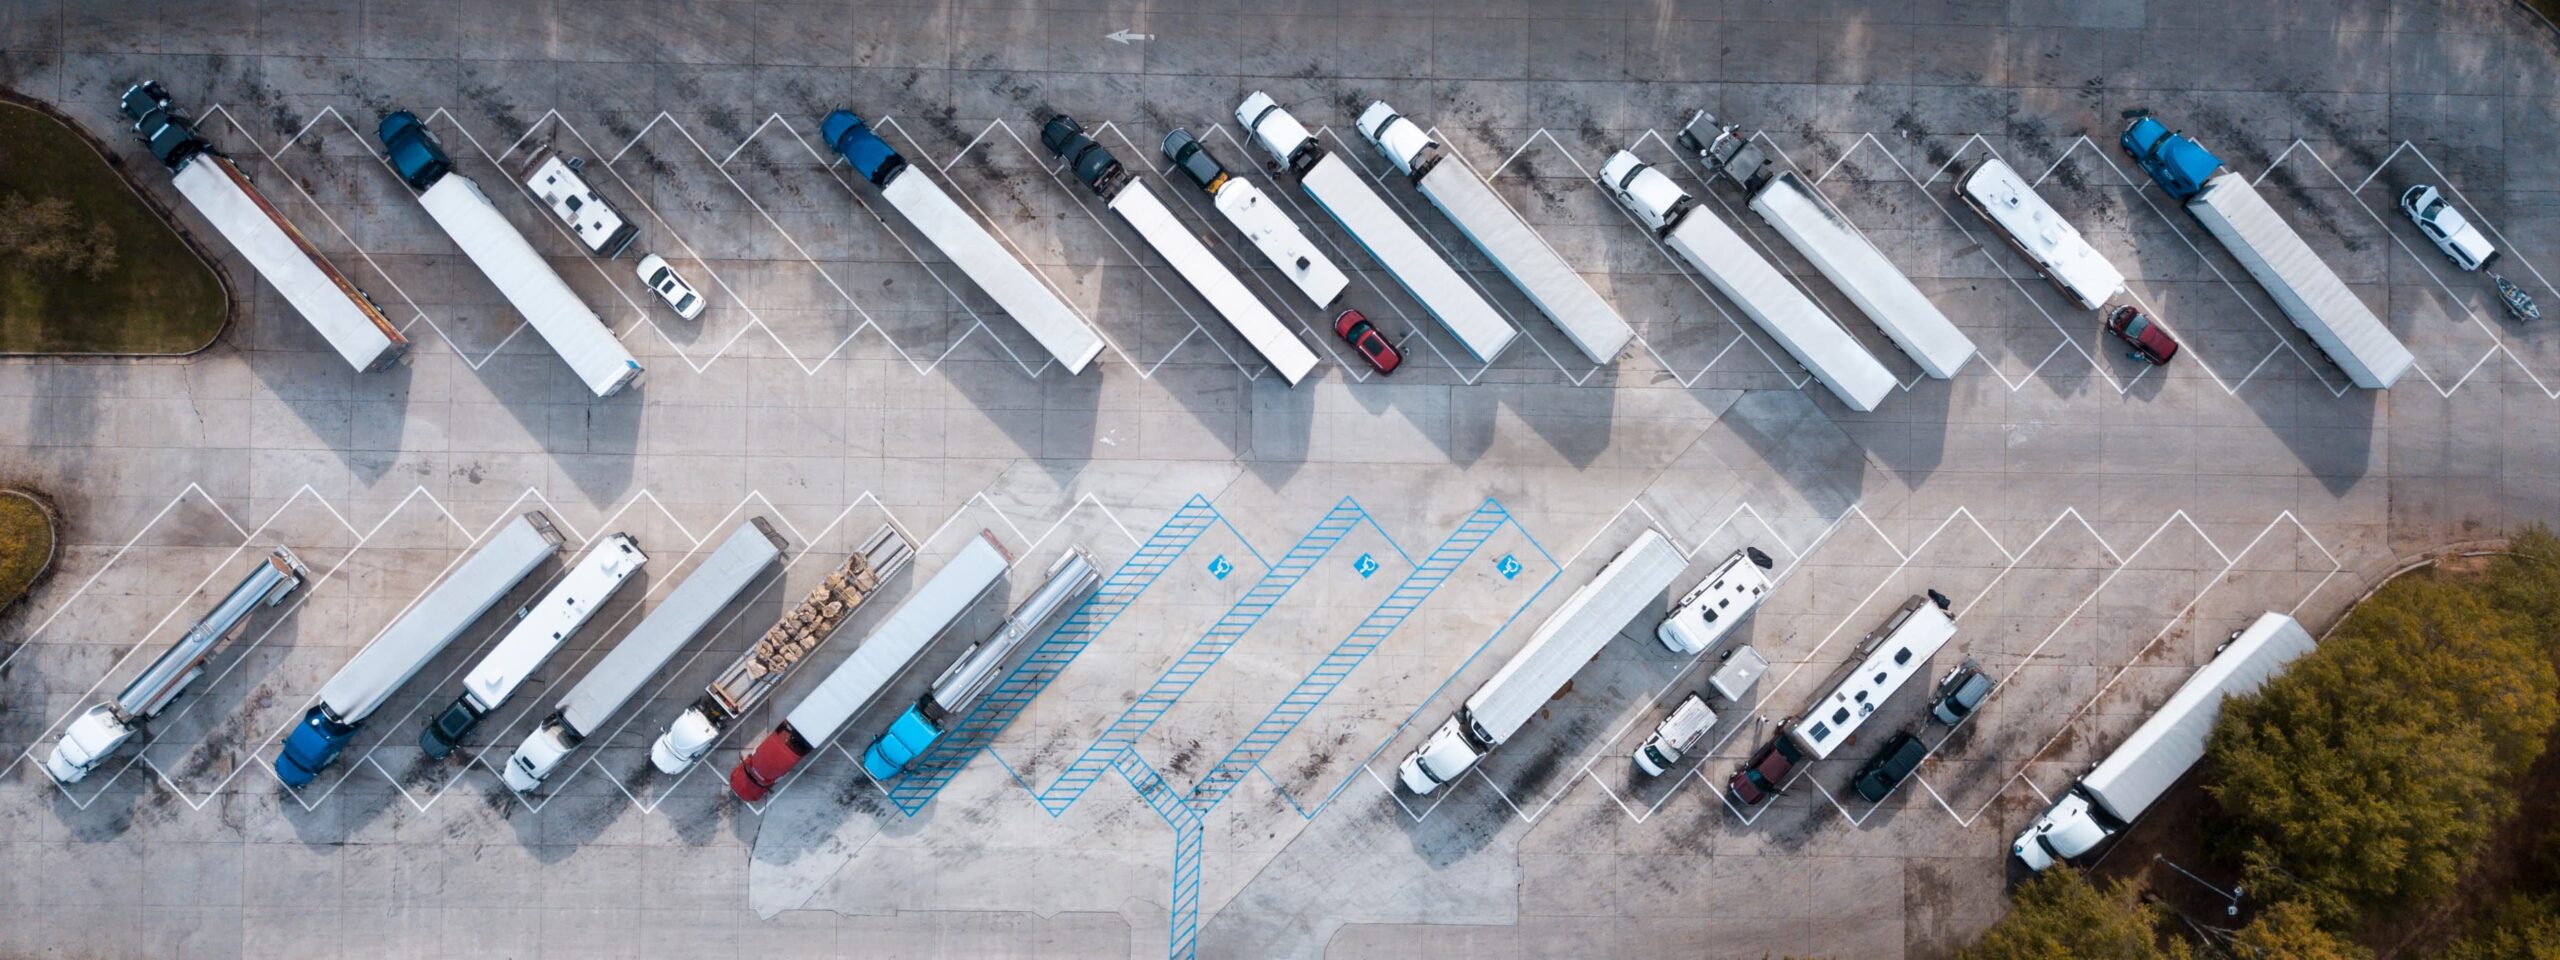 Fleet of trucks in a parking lot